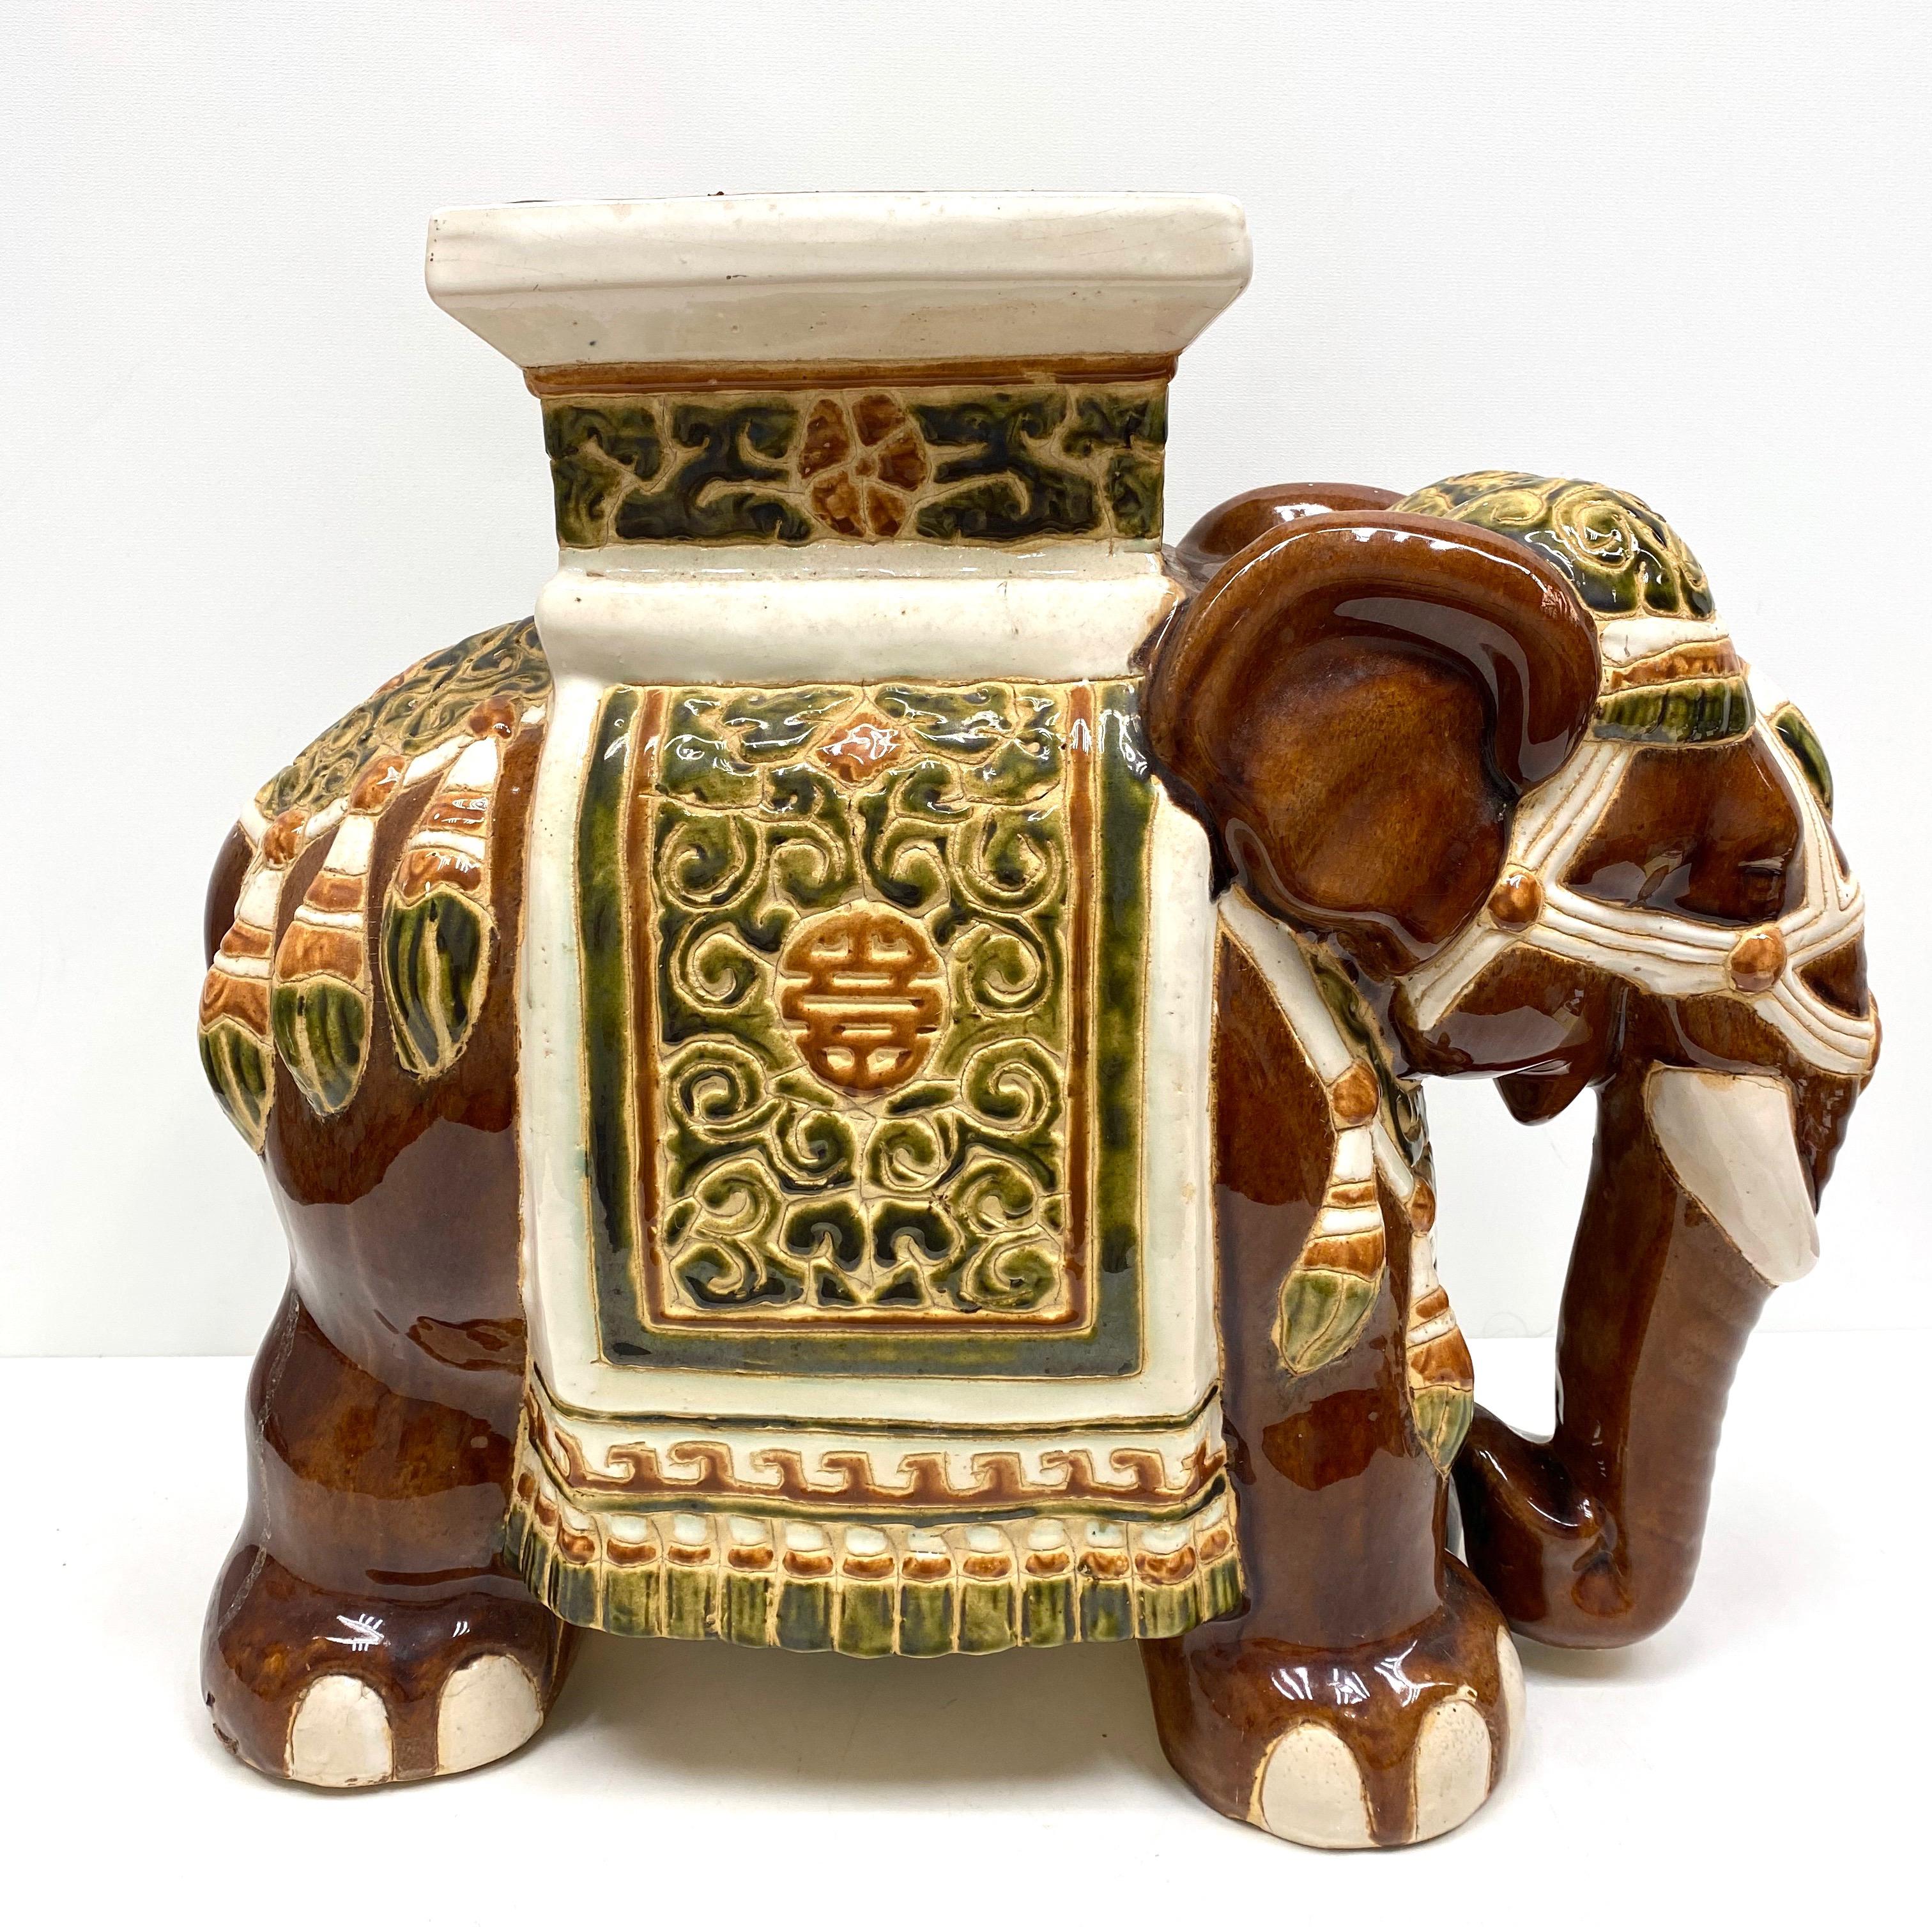 Mitte des 20. Jahrhunderts glasierter Keramik-Elefanten-Gartenhocker, Blumentopfsitz oder Beistelltisch. Handgefertigt aus Keramik. Eine schöne Ergänzung für Ihr Haus, Ihre Terrasse oder Ihren Garten. Eine schöne Ergänzung für jedes Zimmer, jede